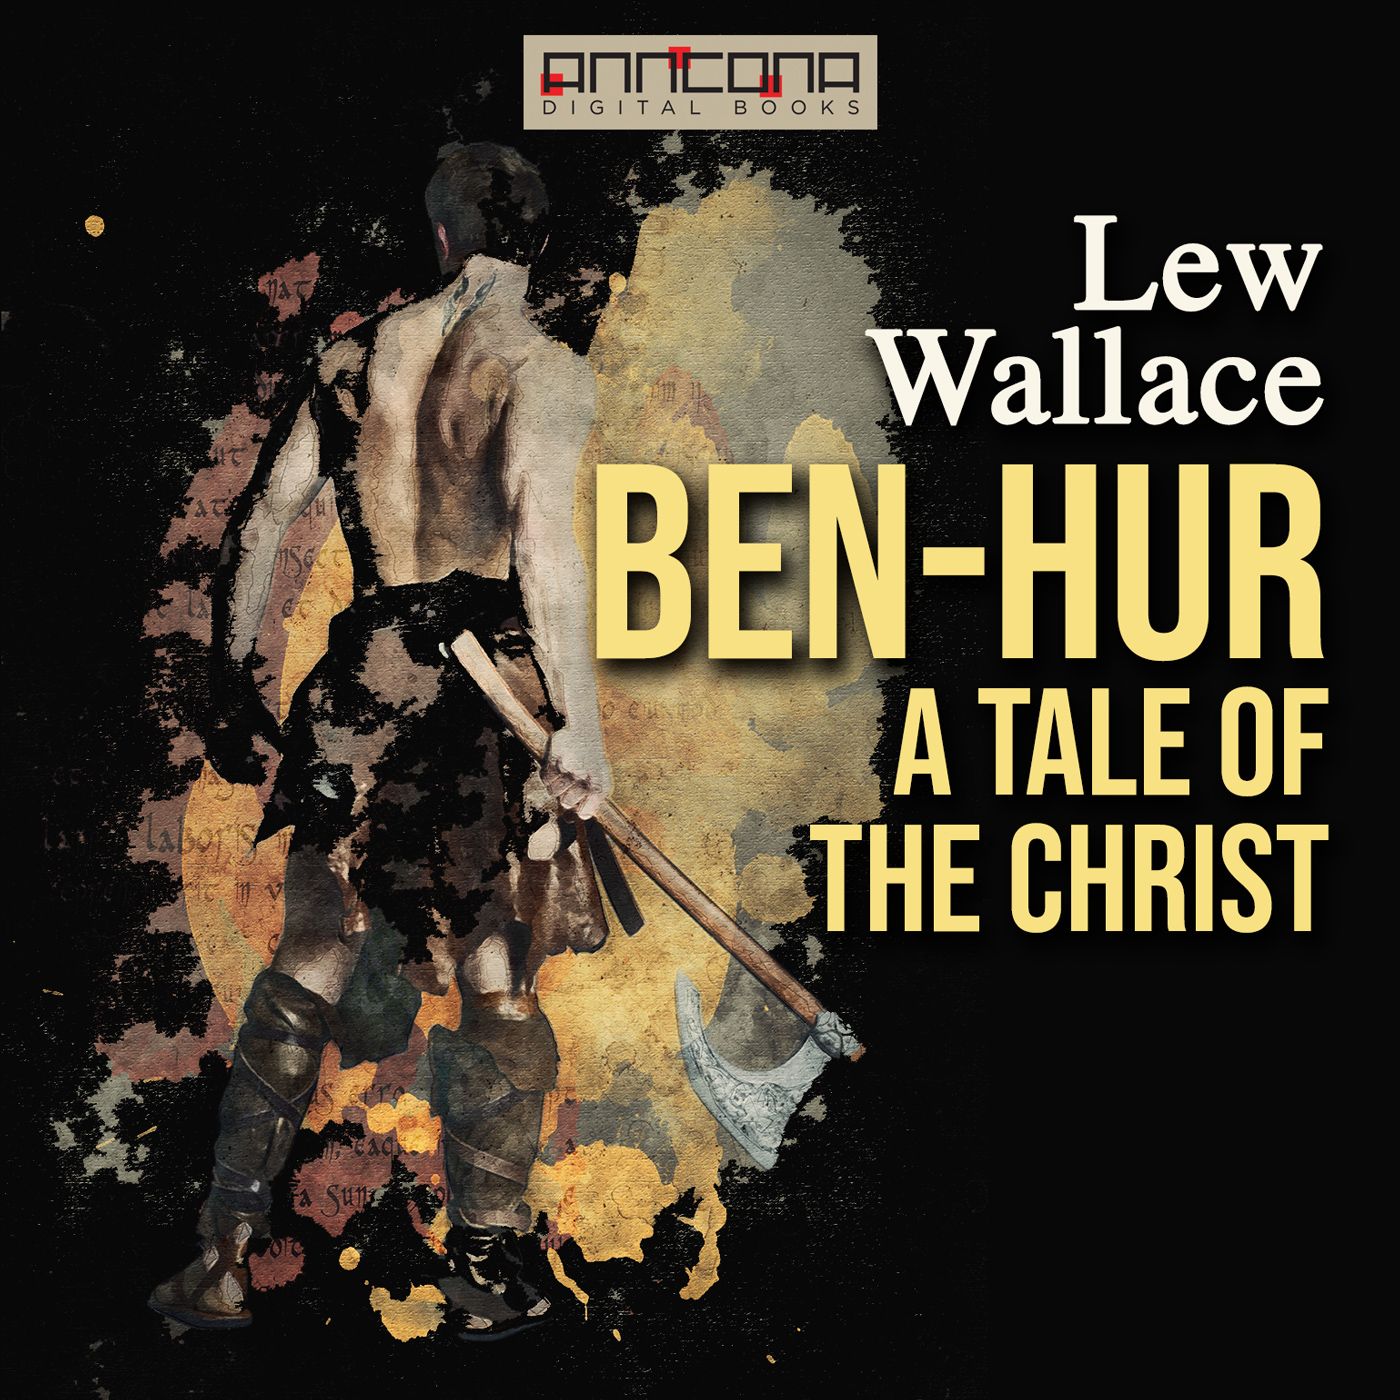 Ben-Hur, ljudbok av Lew Wallace